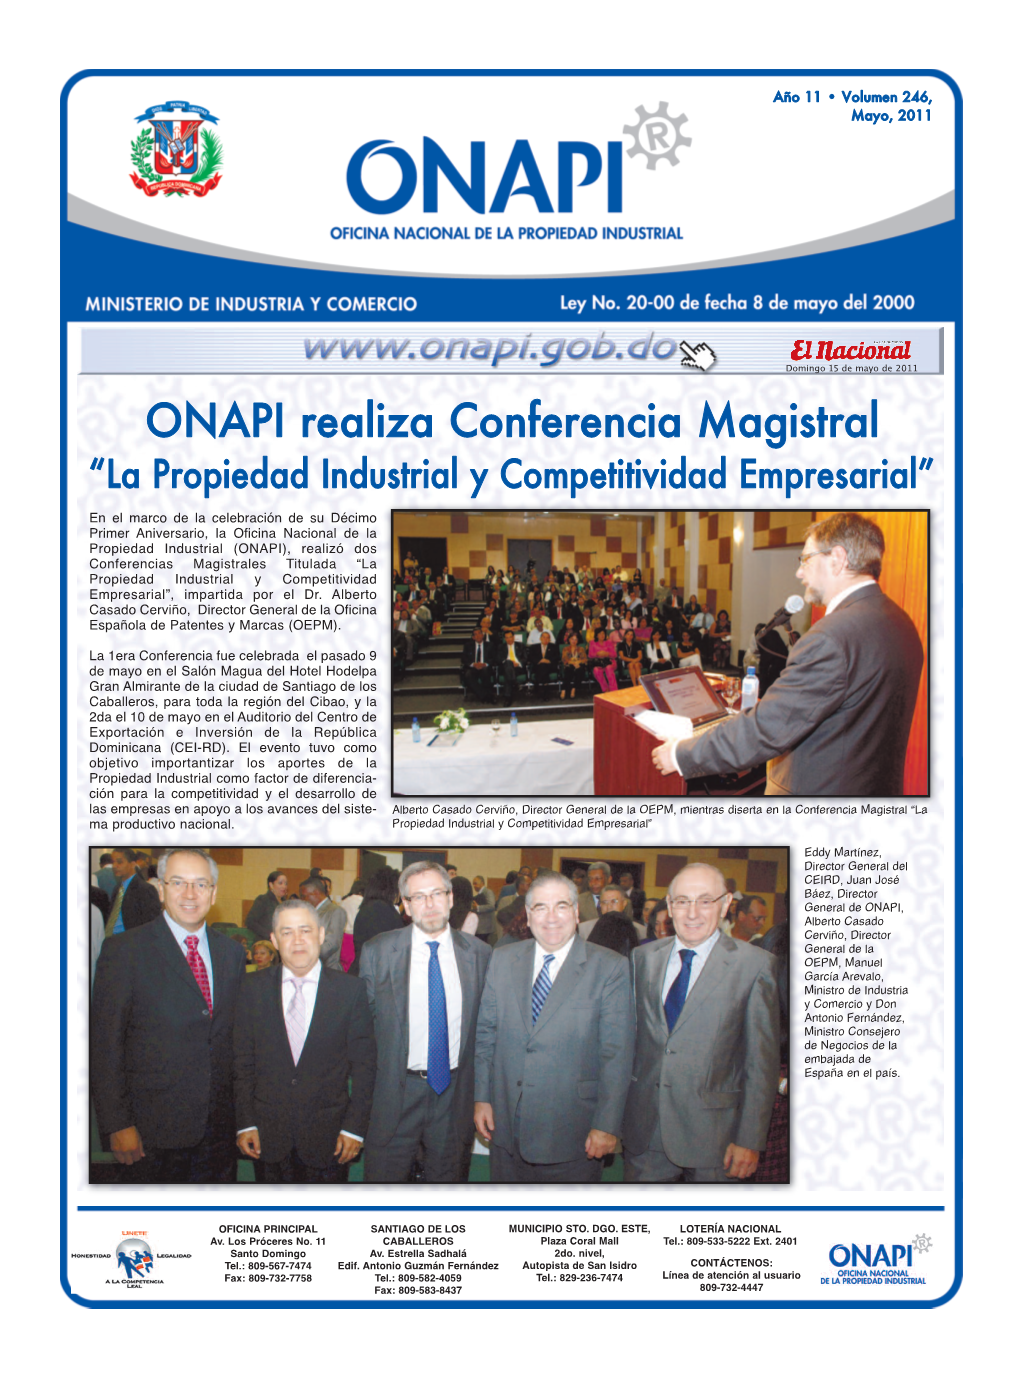 ONAPI Realiza Conferencia Magistral “La Propiedad Industrial Y Competitividad Empresarial”